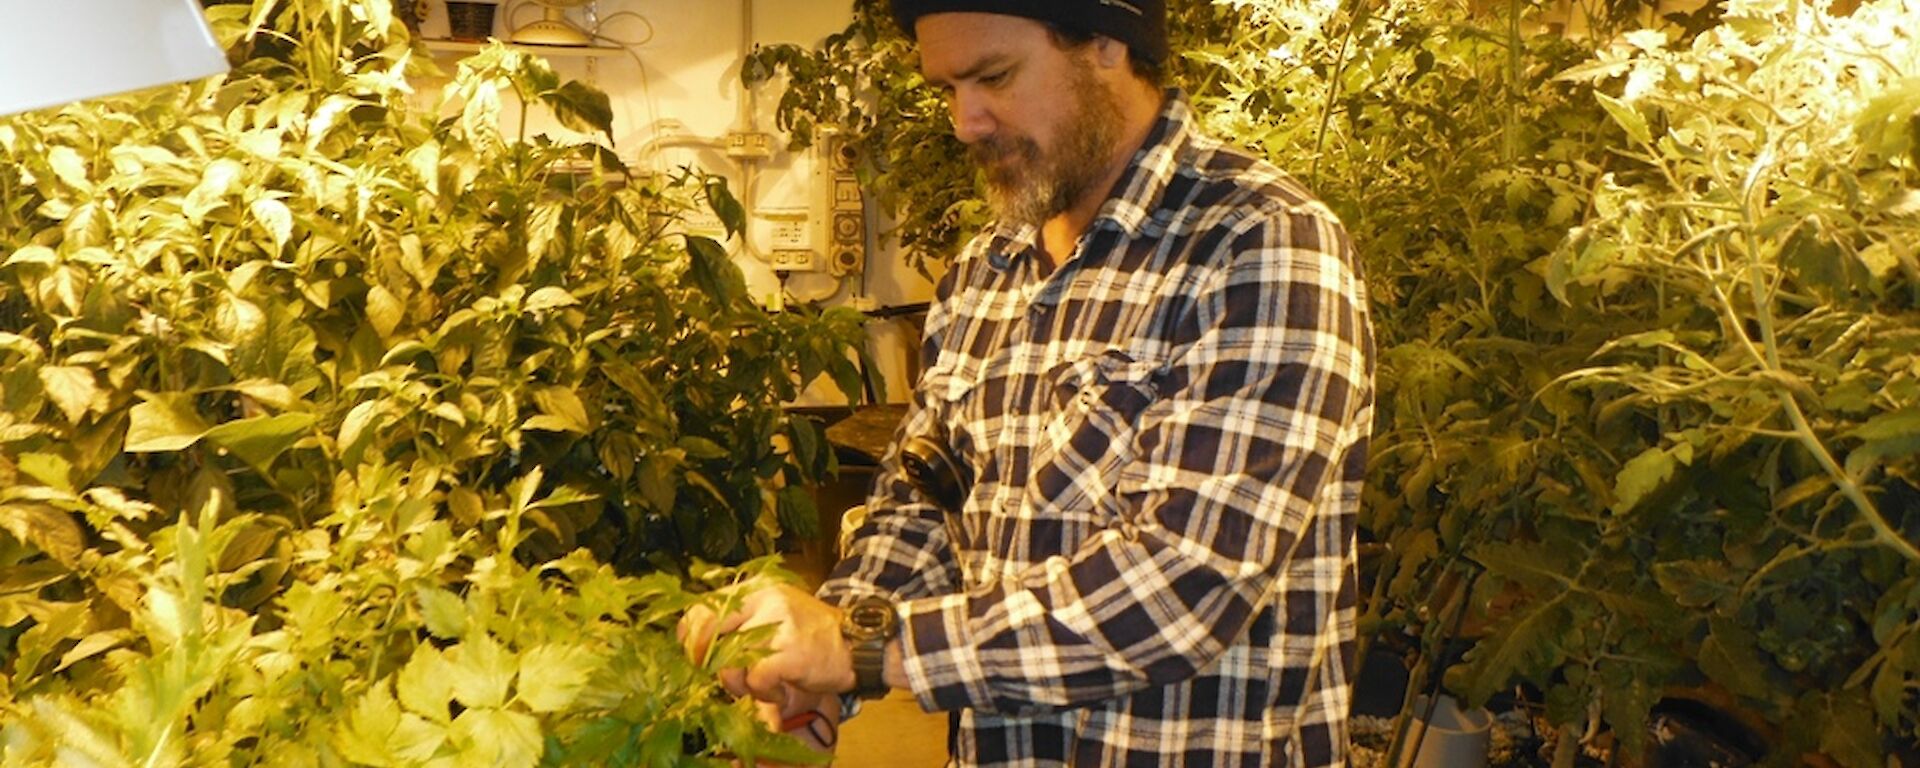 Mark harvesting some fresh herbs